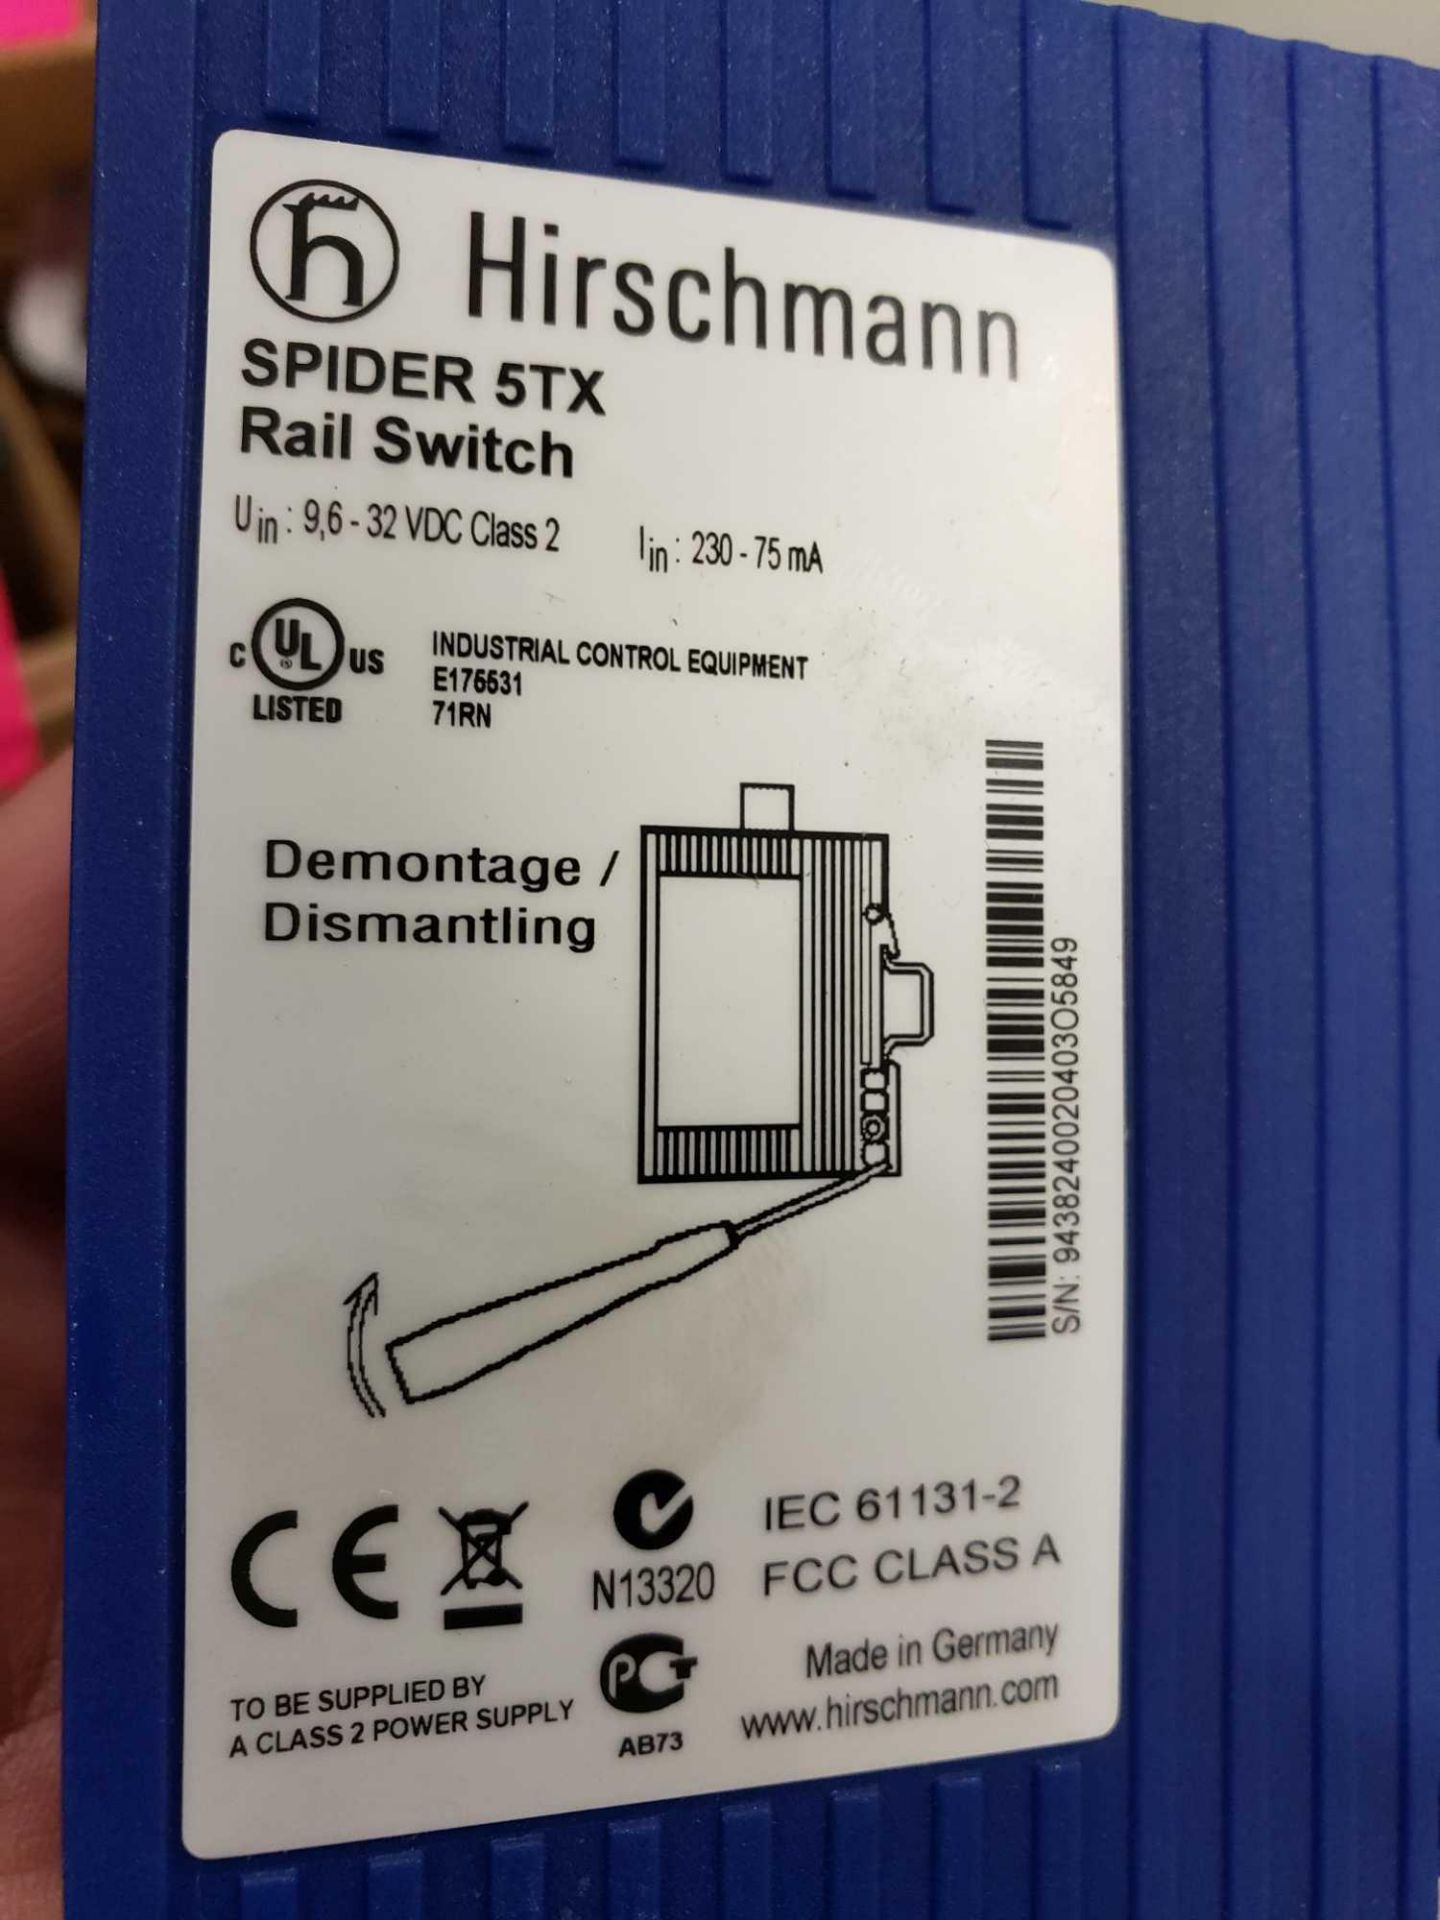 Hirschmann Spider 5TX rail switch. - Image 2 of 2